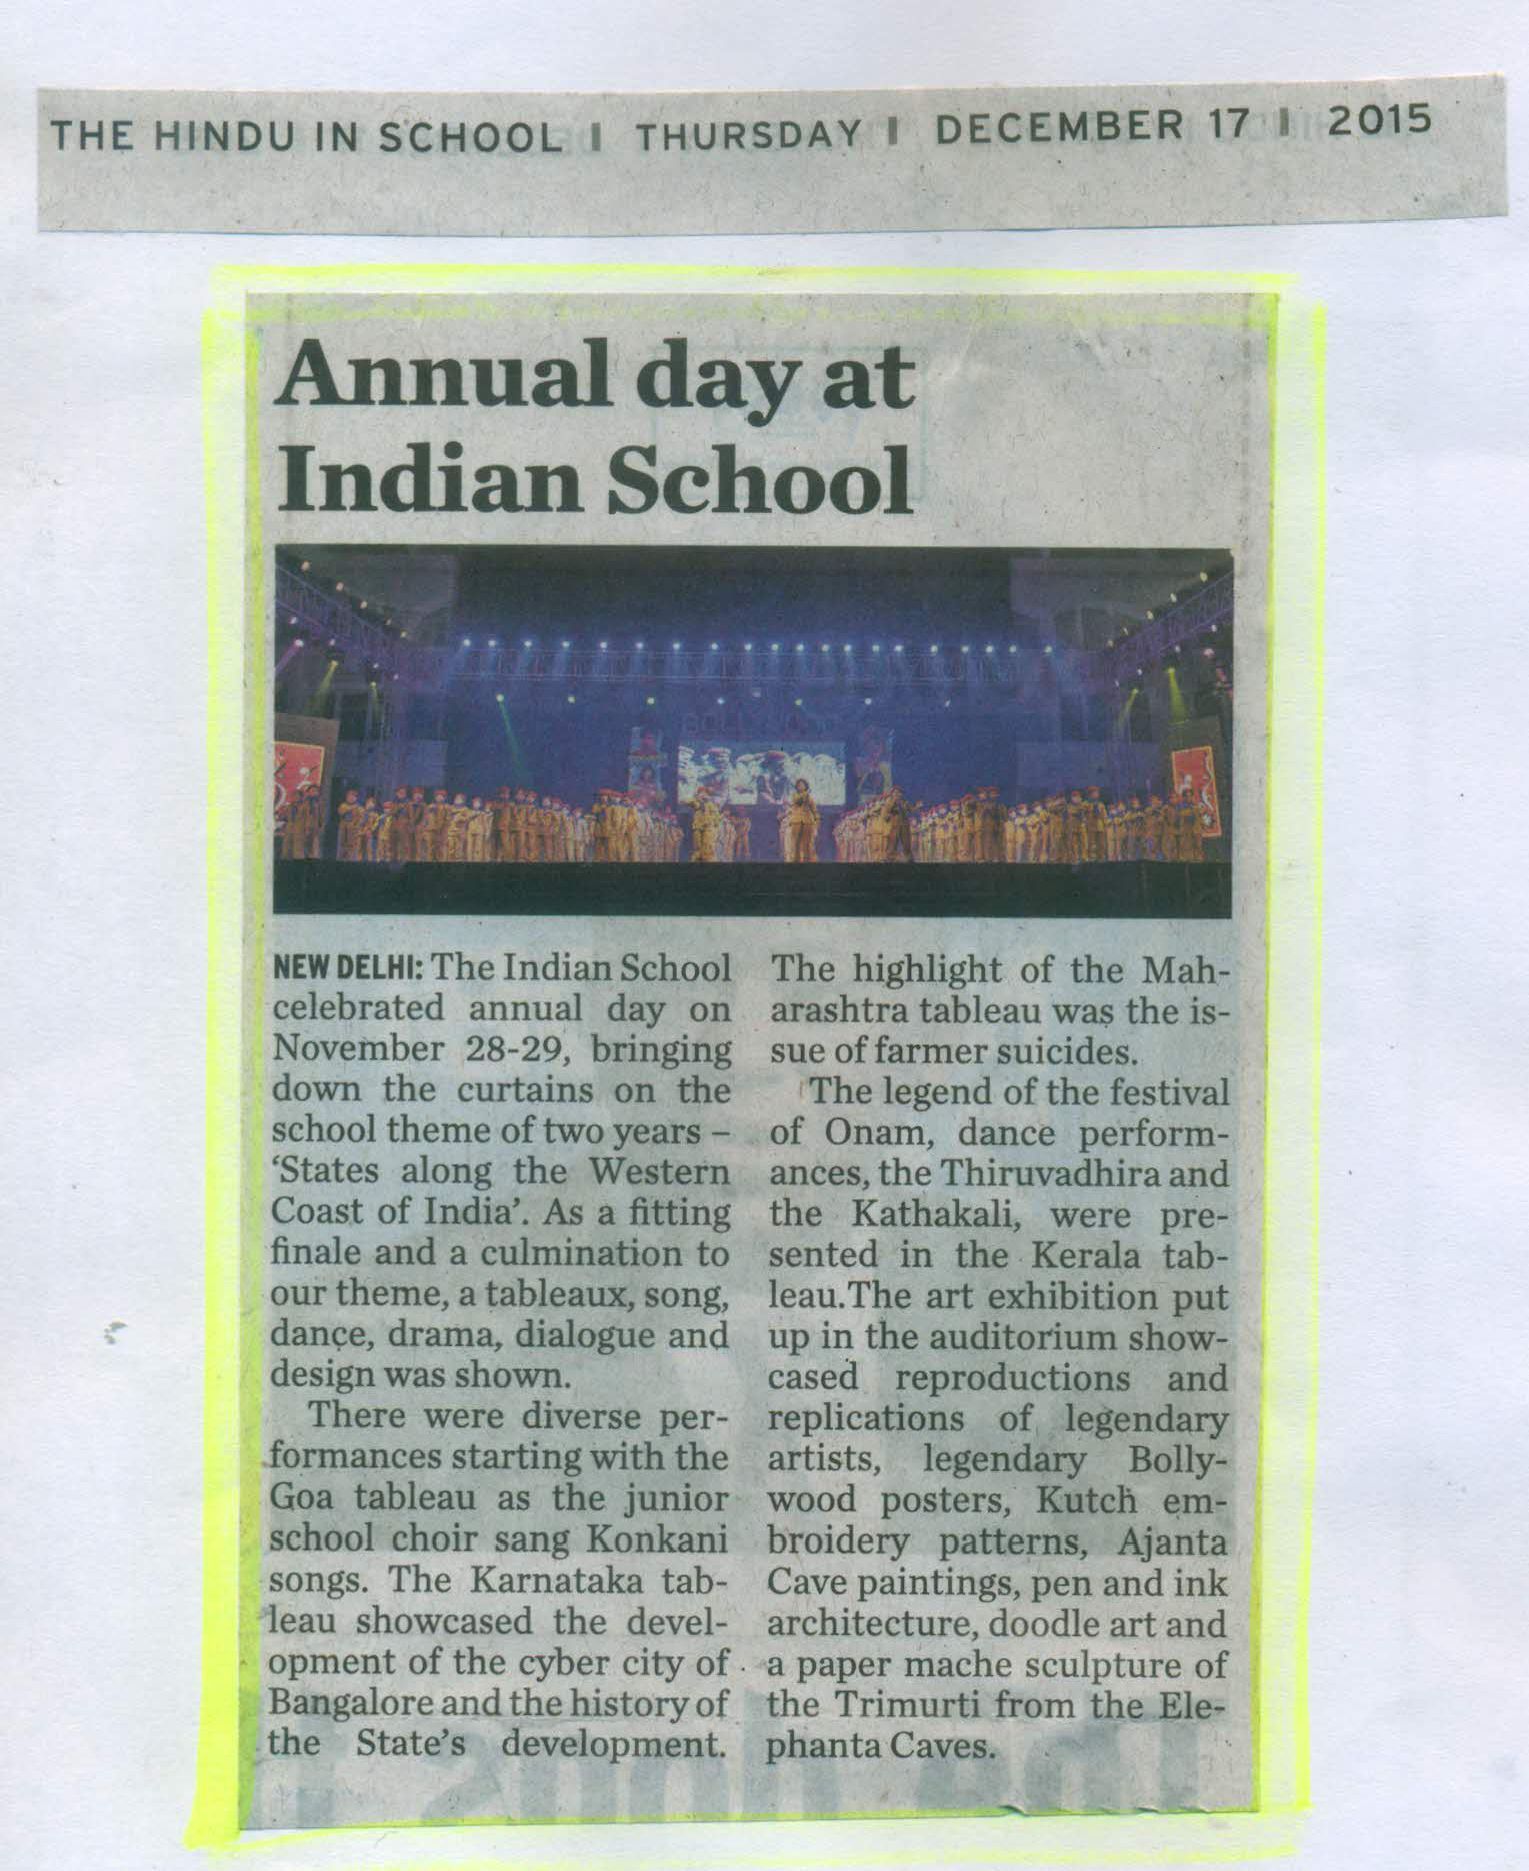 THE HINDU IN SCHOOL, THURSDAY, 17 OCTOBER 2015